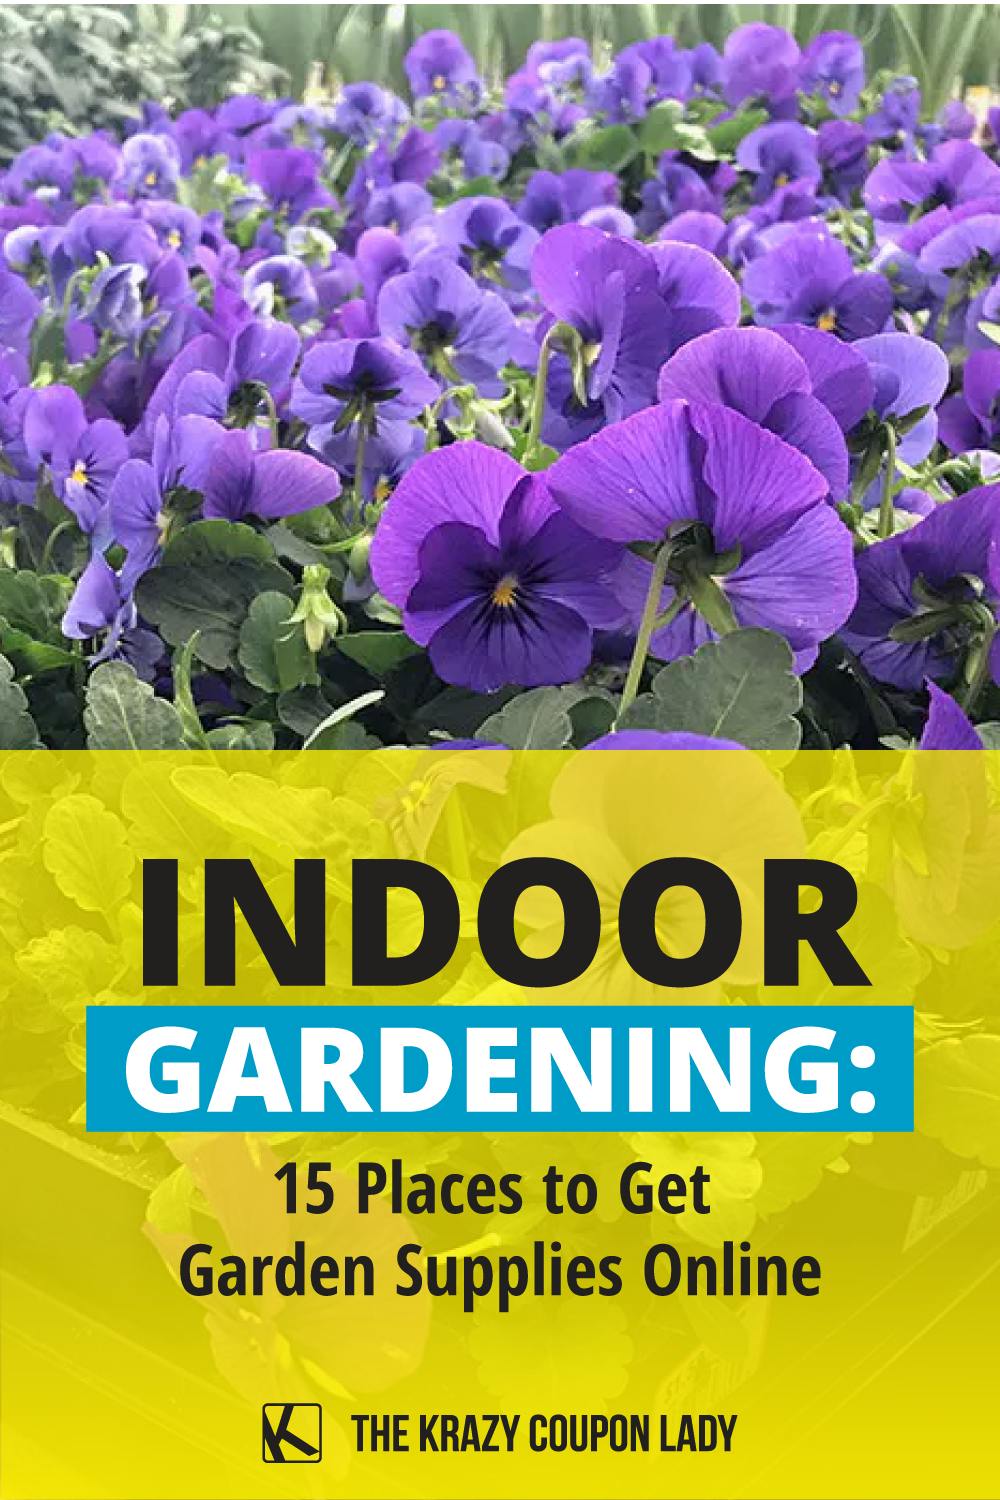 Indoor Gardening: 15 Places to Get Garden Supplies Online